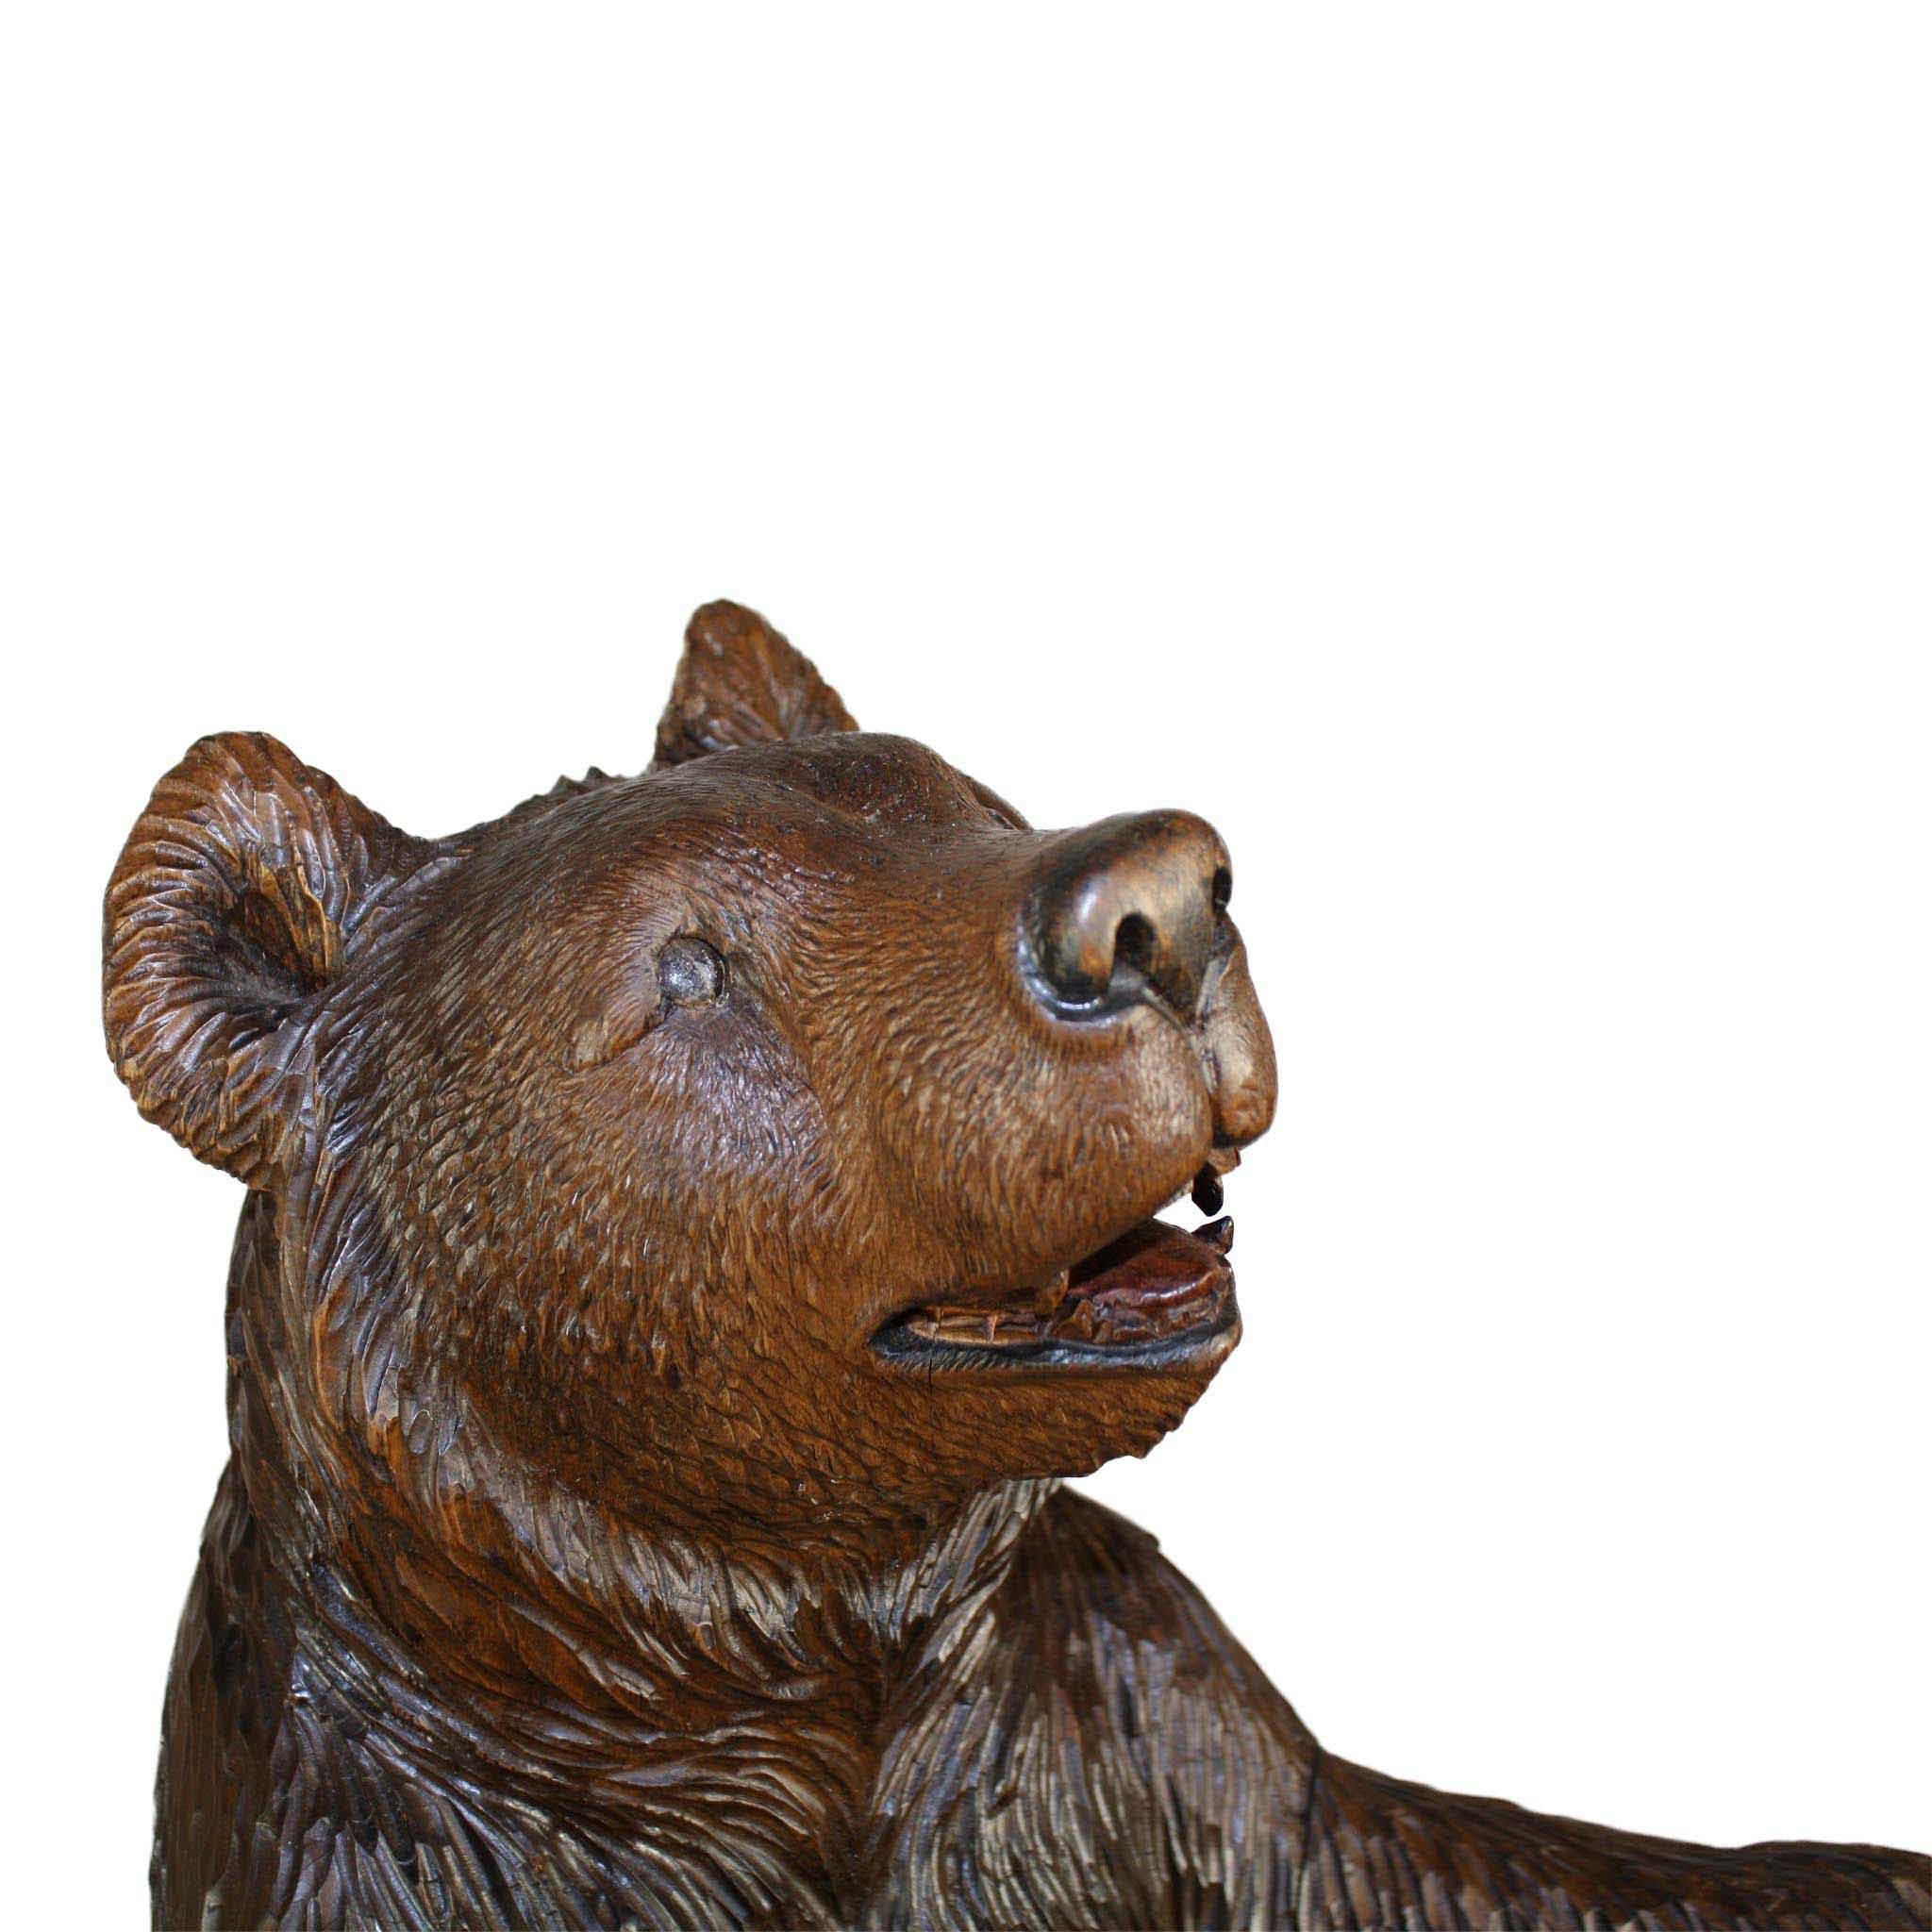 Black Forest Carved Bear